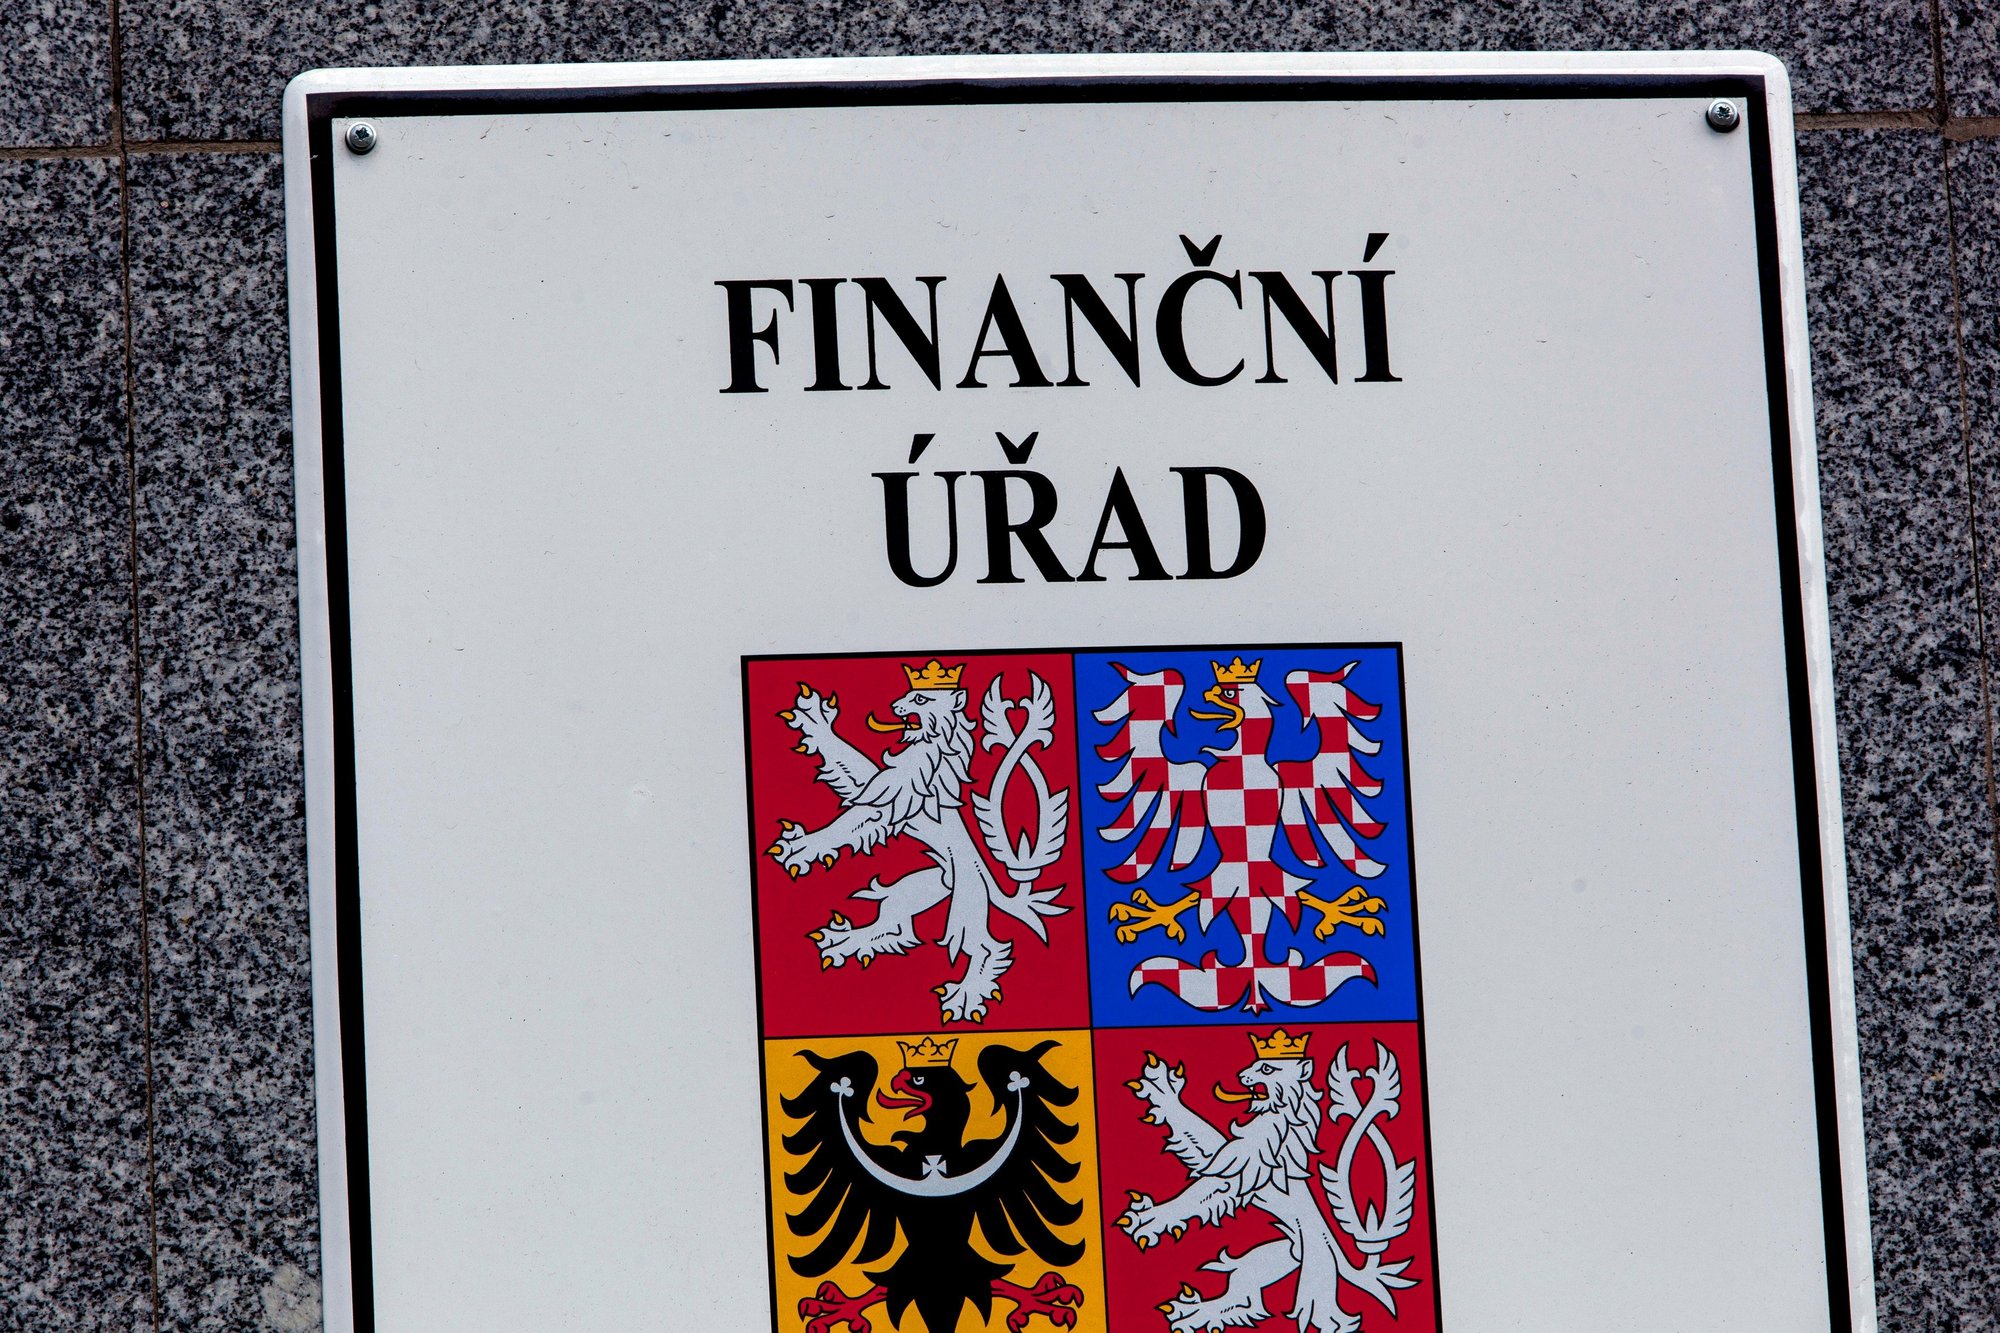 Finanční úřad by měl stejně jako další úřady pomáhat lidem, ne jim škodit, tvrdí zastupitel Valašského Meziříčí, Denis Rychtar